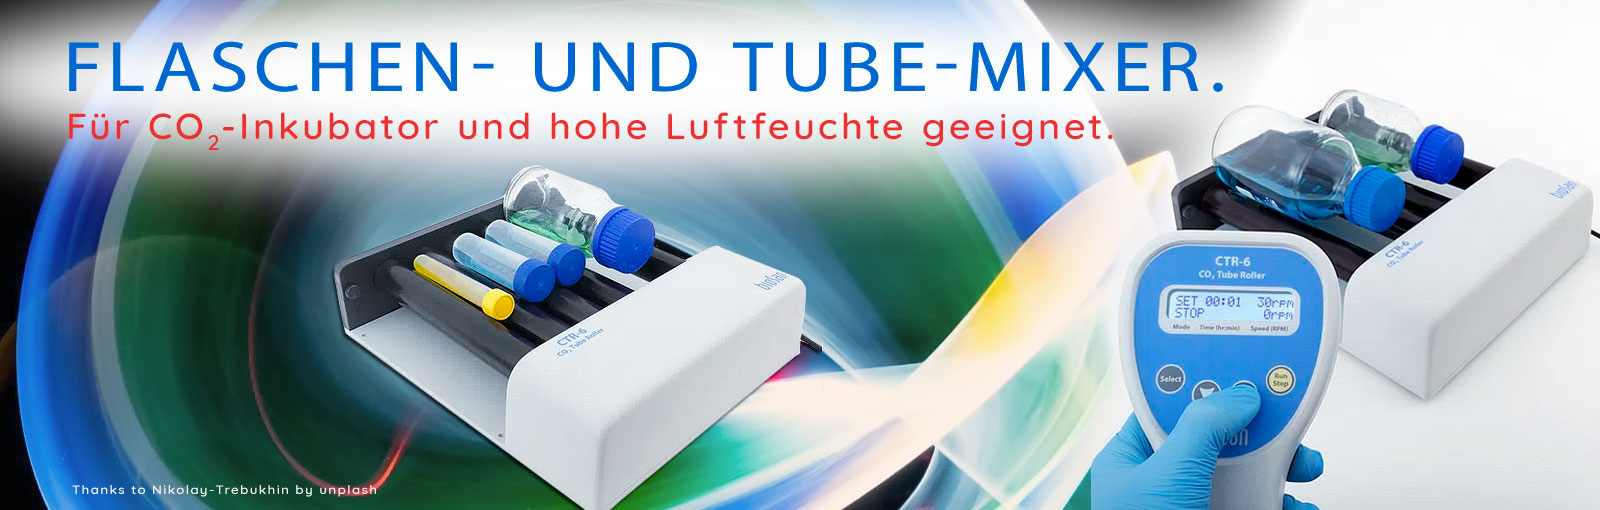 CTR-6 Tube-Mixer - Rollenmischer für Inkubator